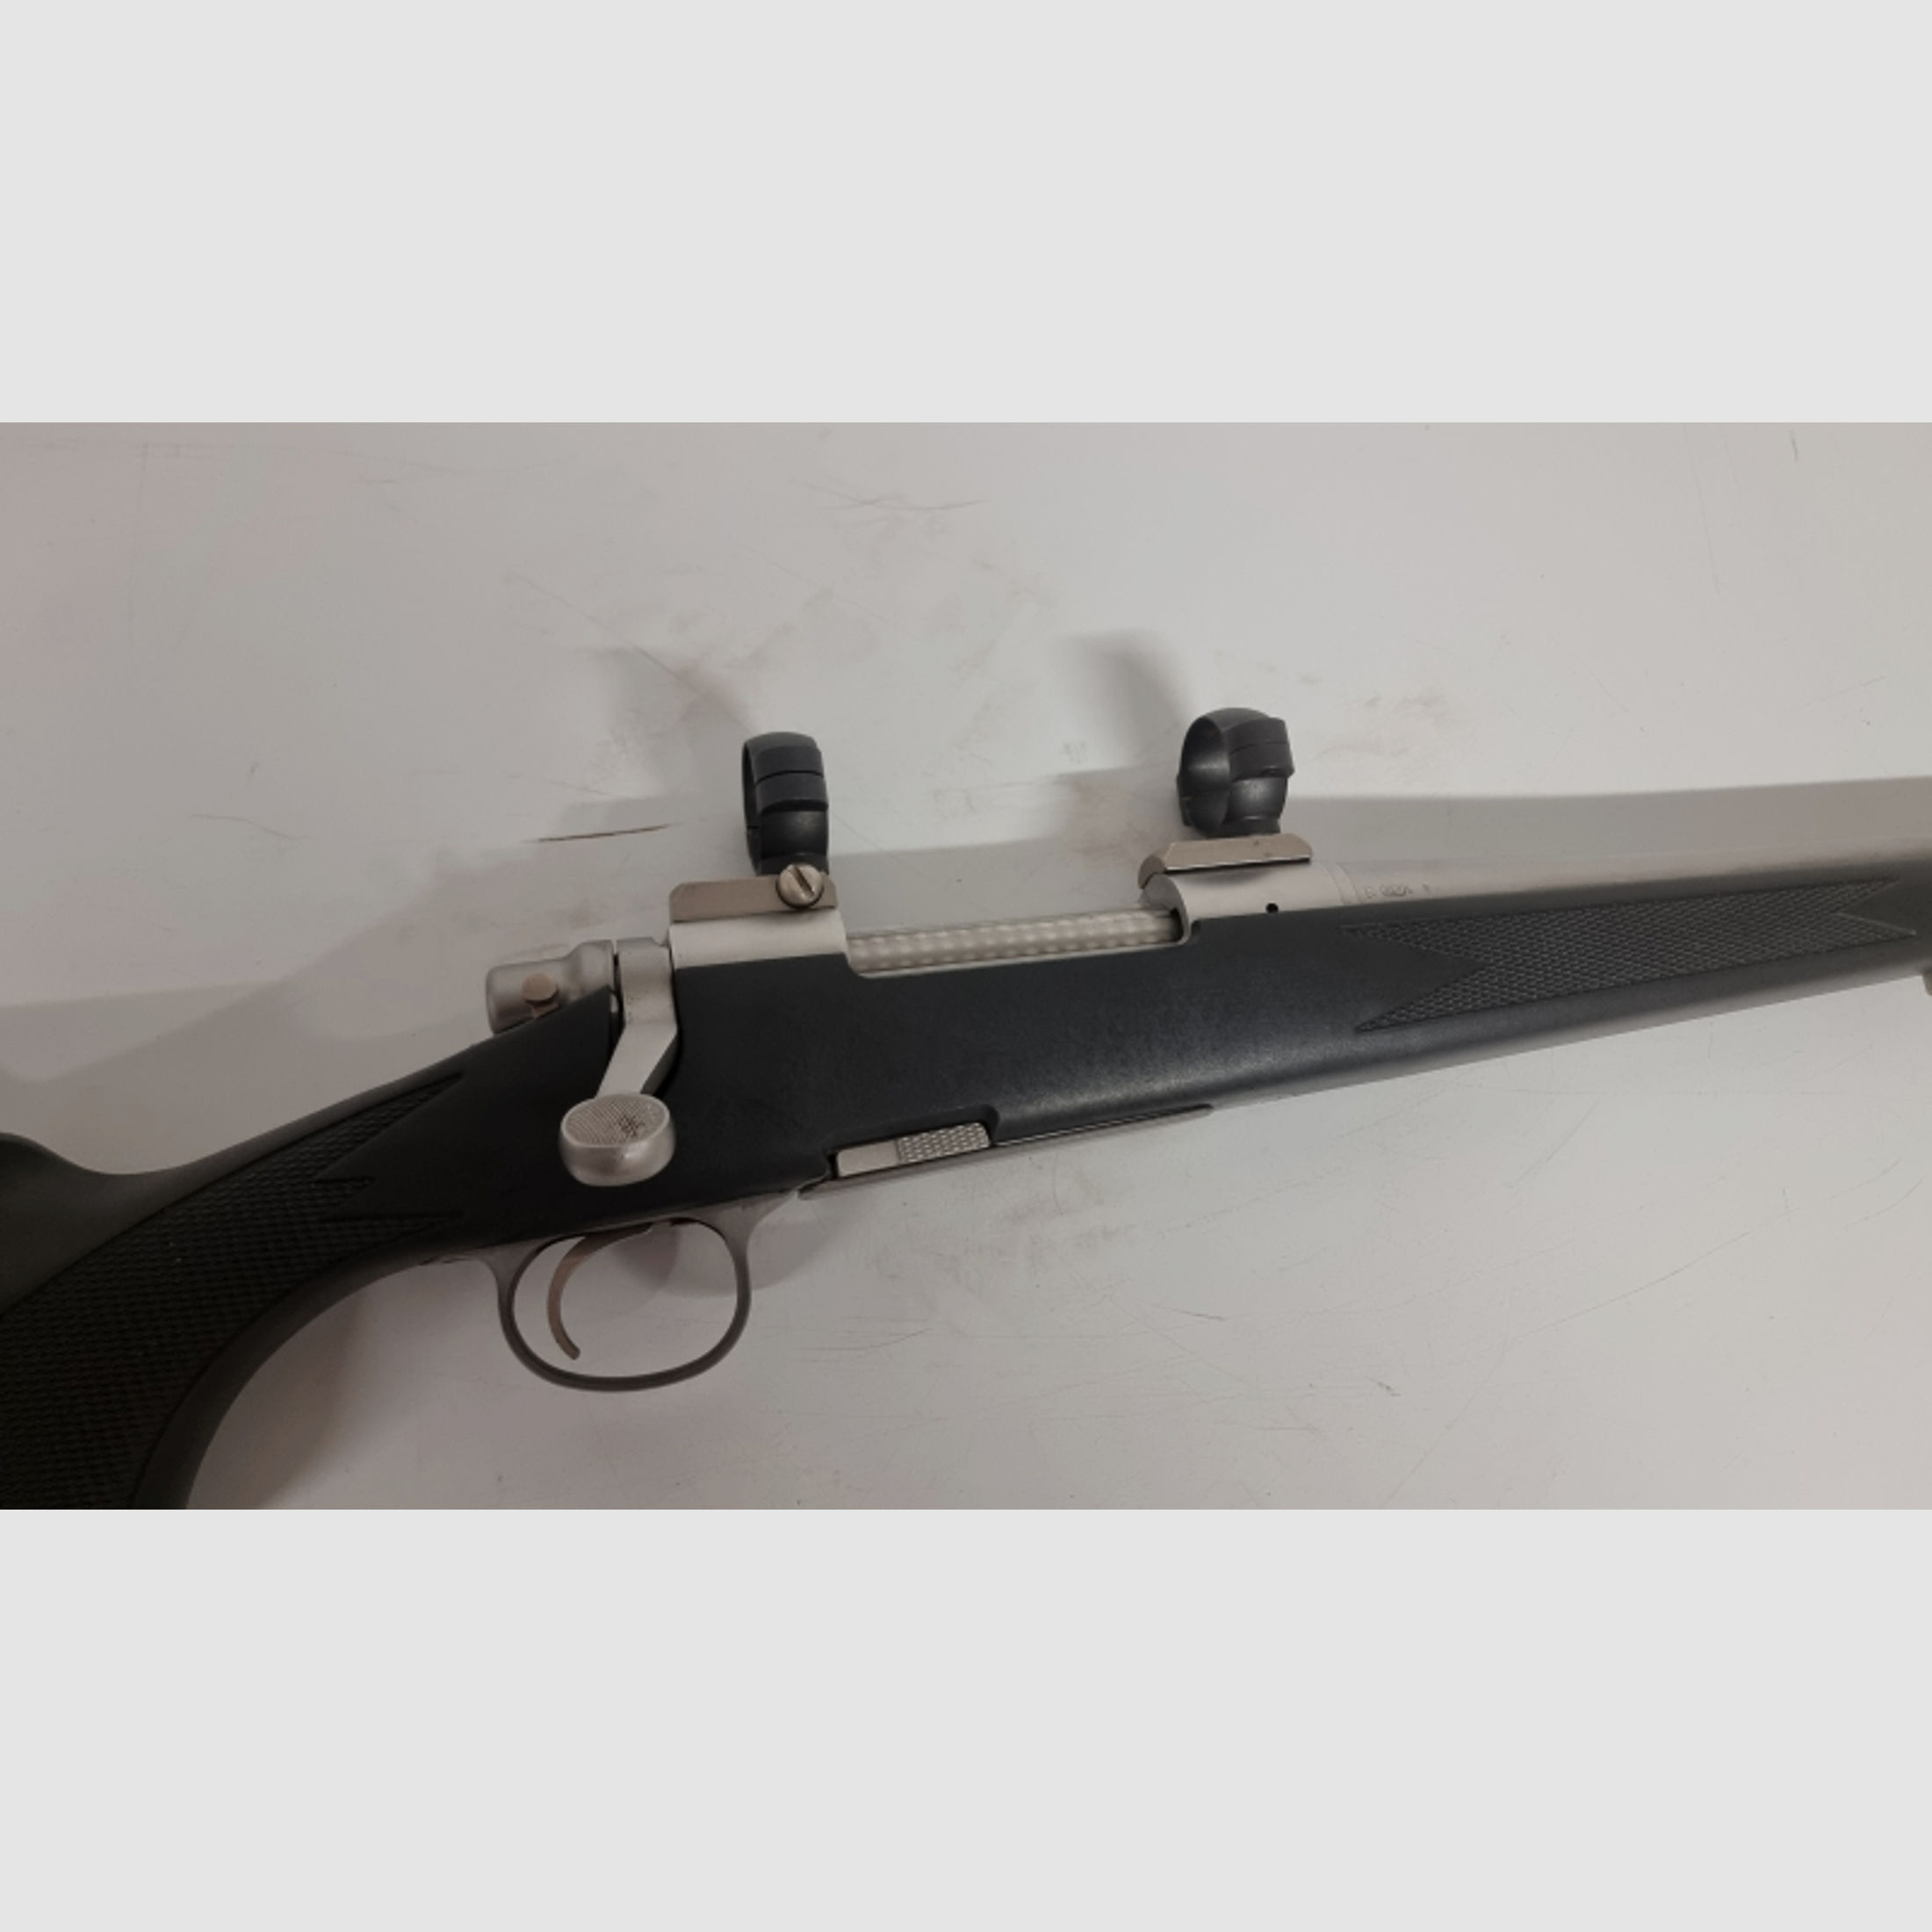 Remington 700 in 338 Winchester Magnum mit Leupold Std Montageringe